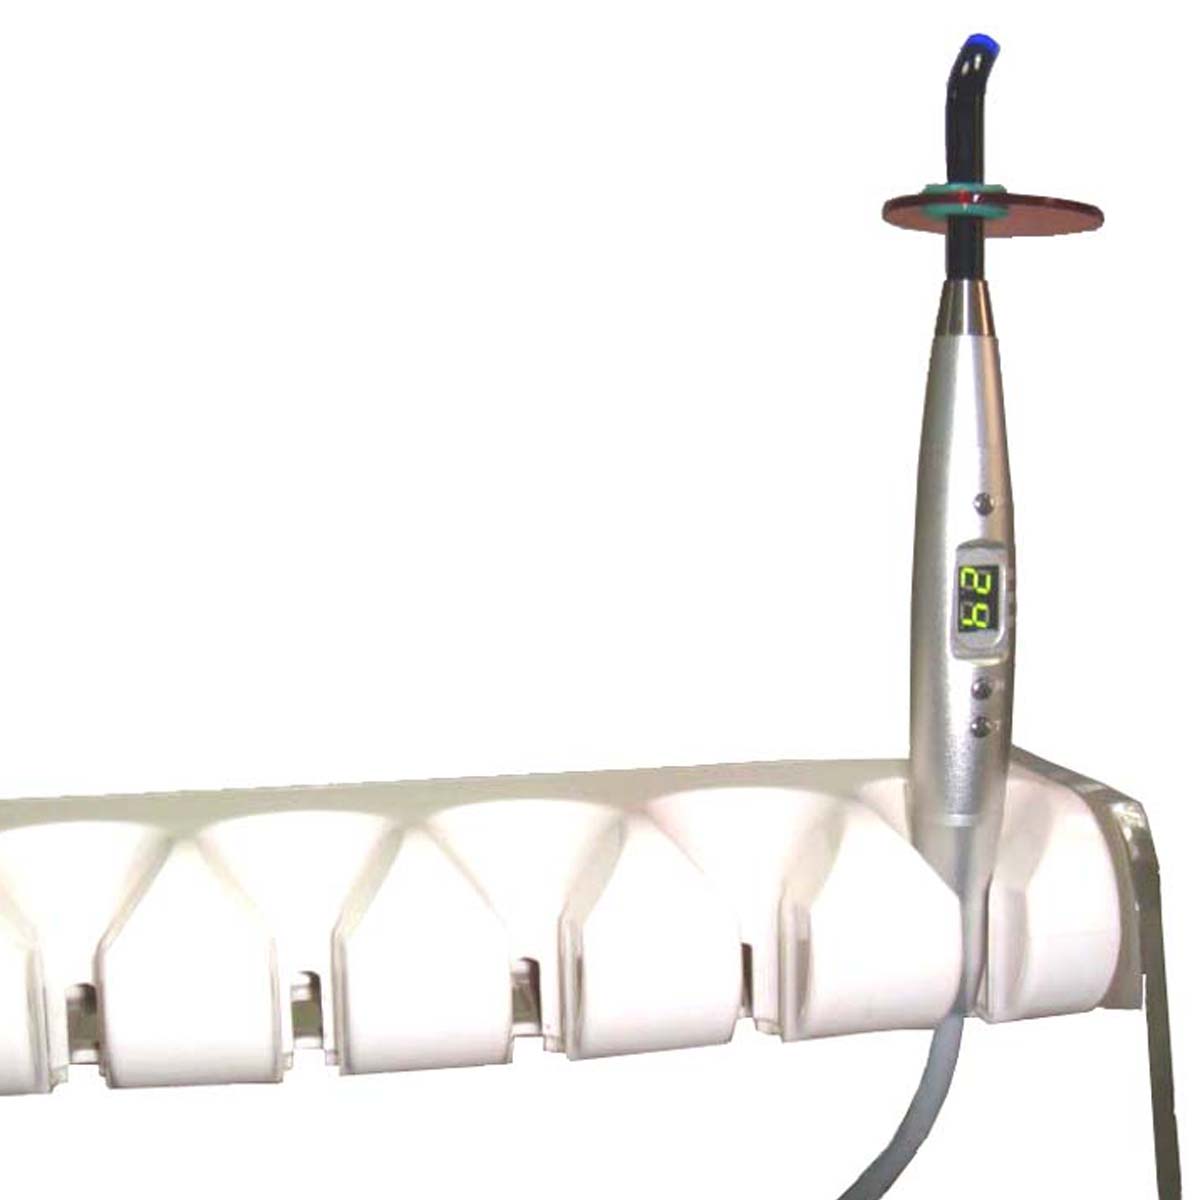 Gnist ledningsfri LED-tandhærdende lys med krop af aluminium - 1 Tælle 5 eller 7 Watt sort farve professionelt tandlæge værktøj (Kablet og tandstolsversion tilgængelig)